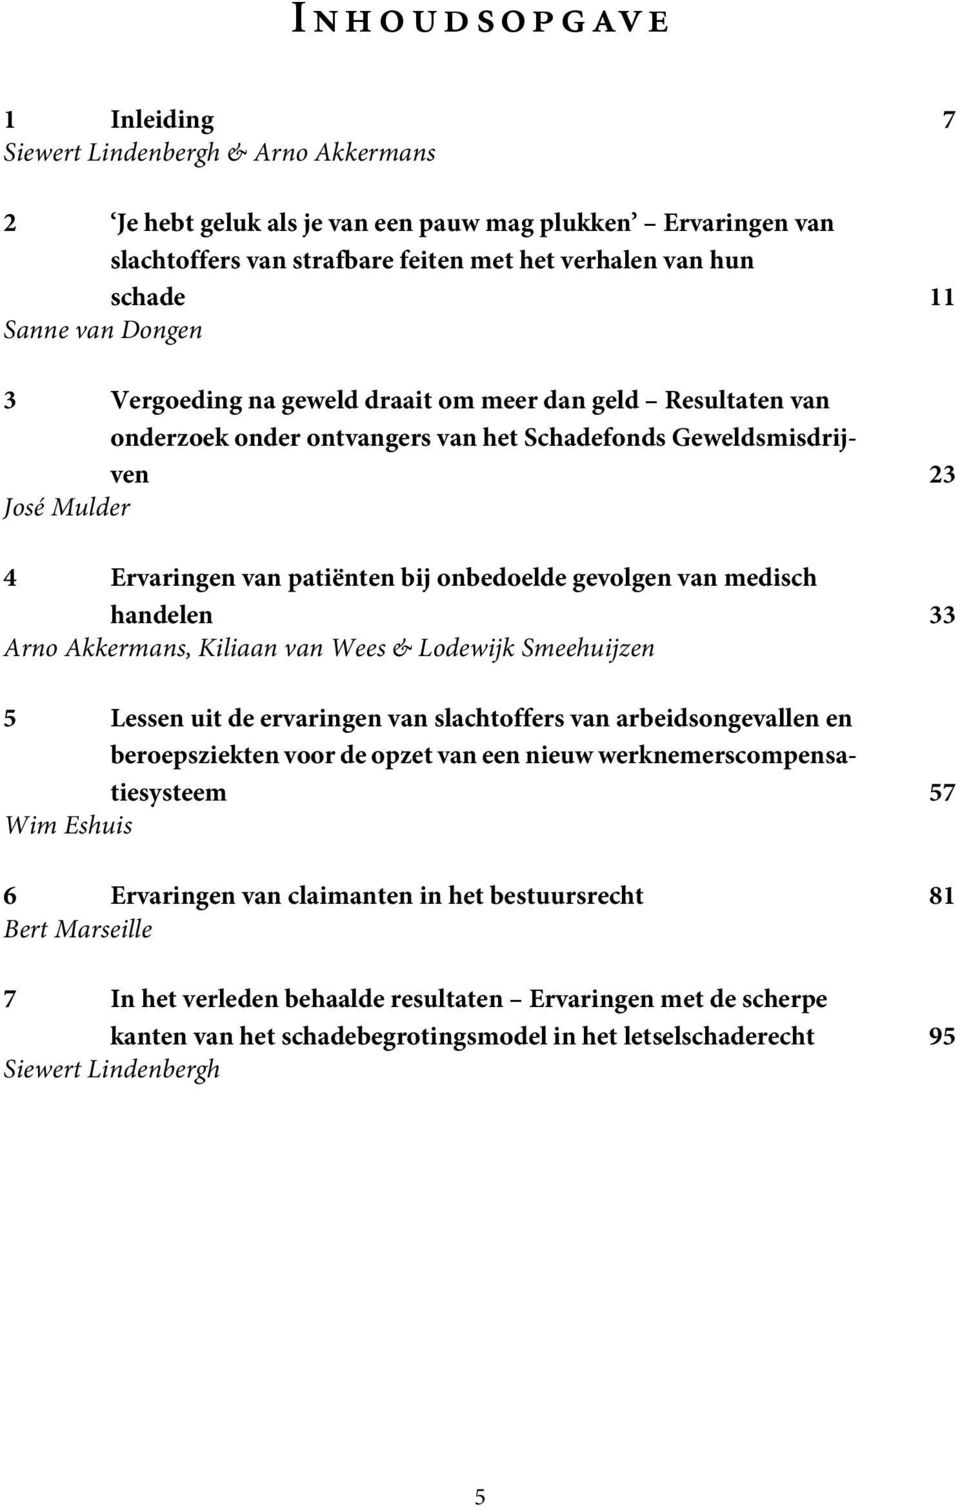 onbedoelde gevolgen van medisch handelen 33 Arno Akkermans, Kiliaan van Wees & Lodewijk Smeehuijzen 5 Lessen uit de ervaringen van slachtoffers van arbeidsongevallen en beroepsziekten voor de opzet